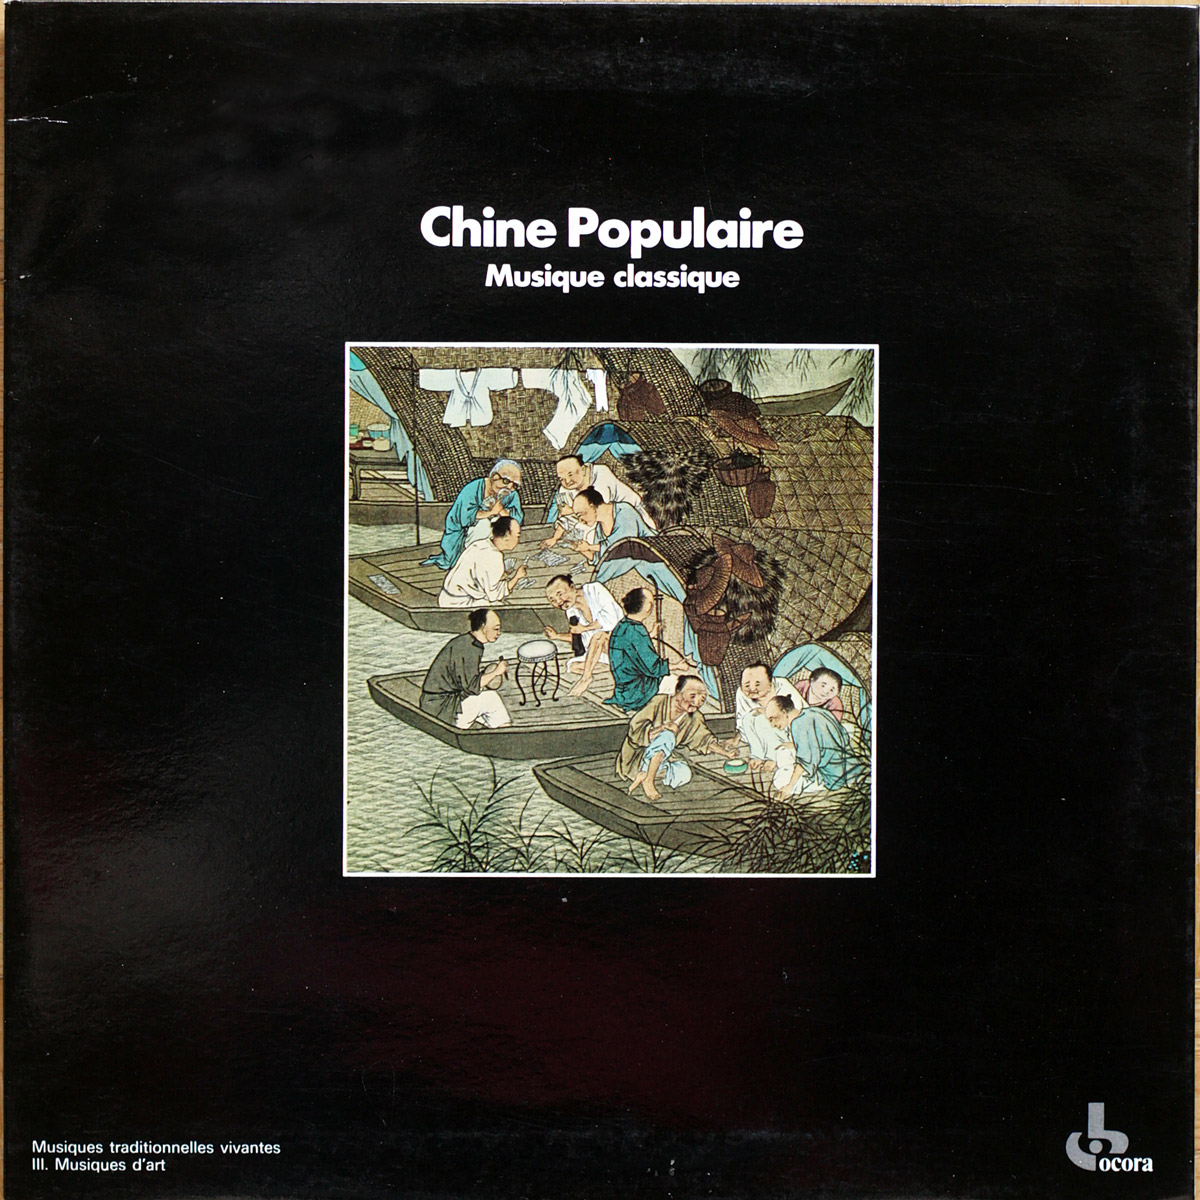 Musiques traditionnelles vivantes • Chine populaire • Musique classique • Ocora 558 519 • Radio France